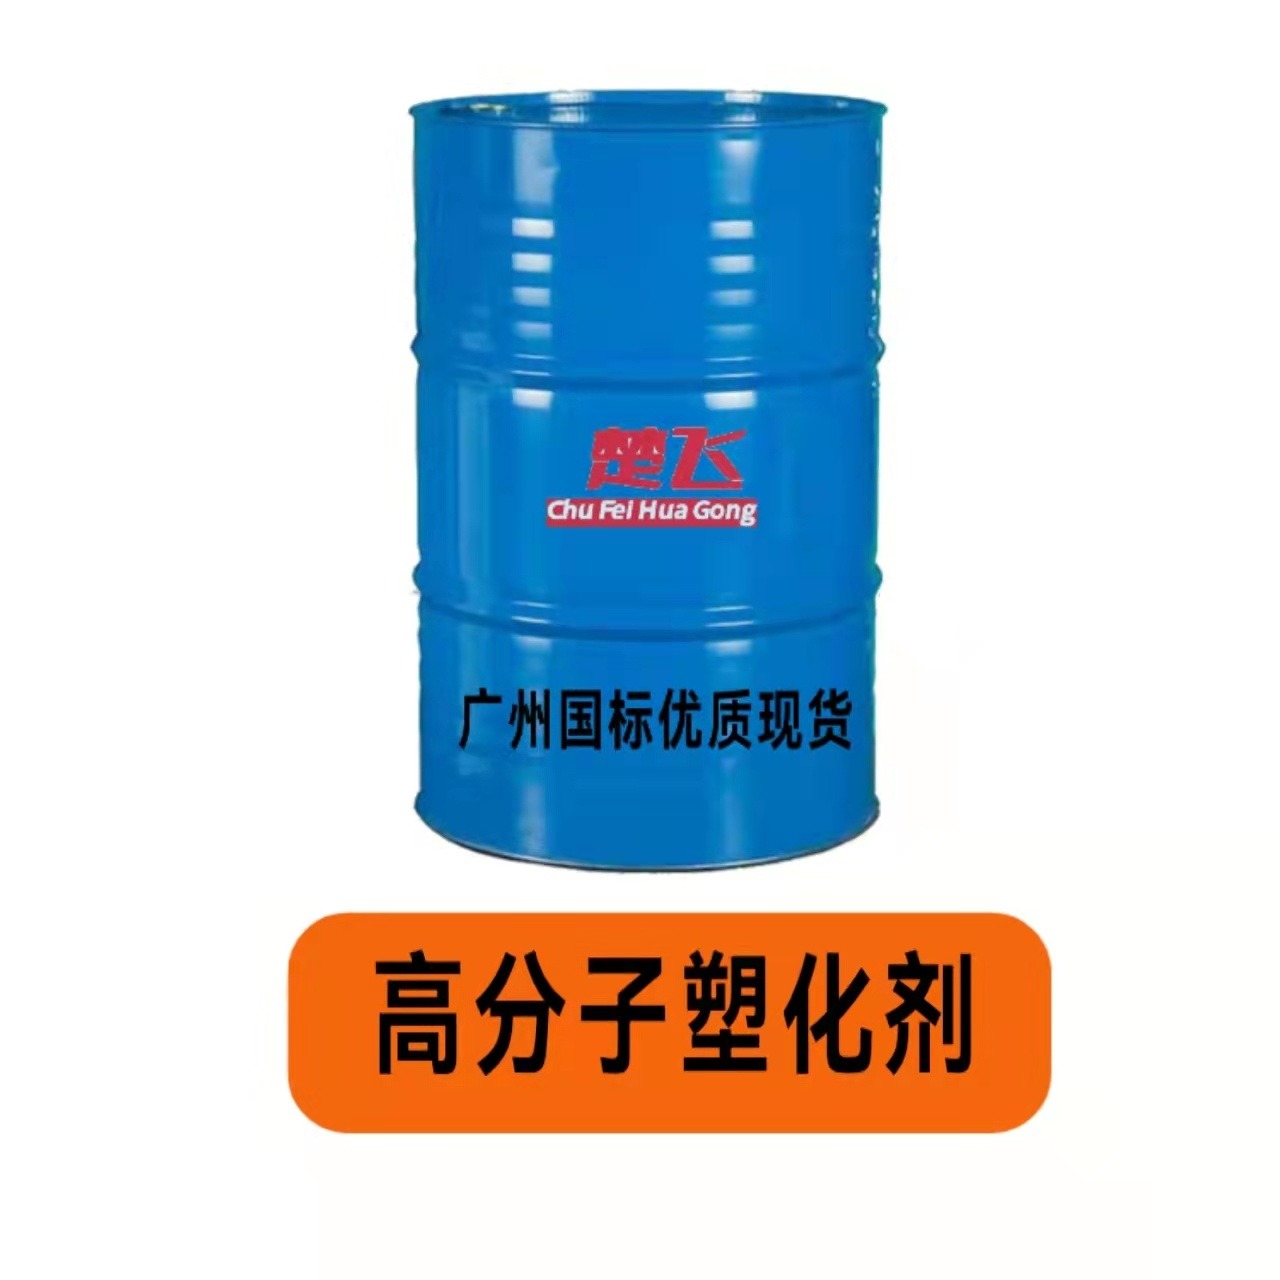 广州楚飞现货 增塑剂 高分子塑化剂 PVC制品助剂